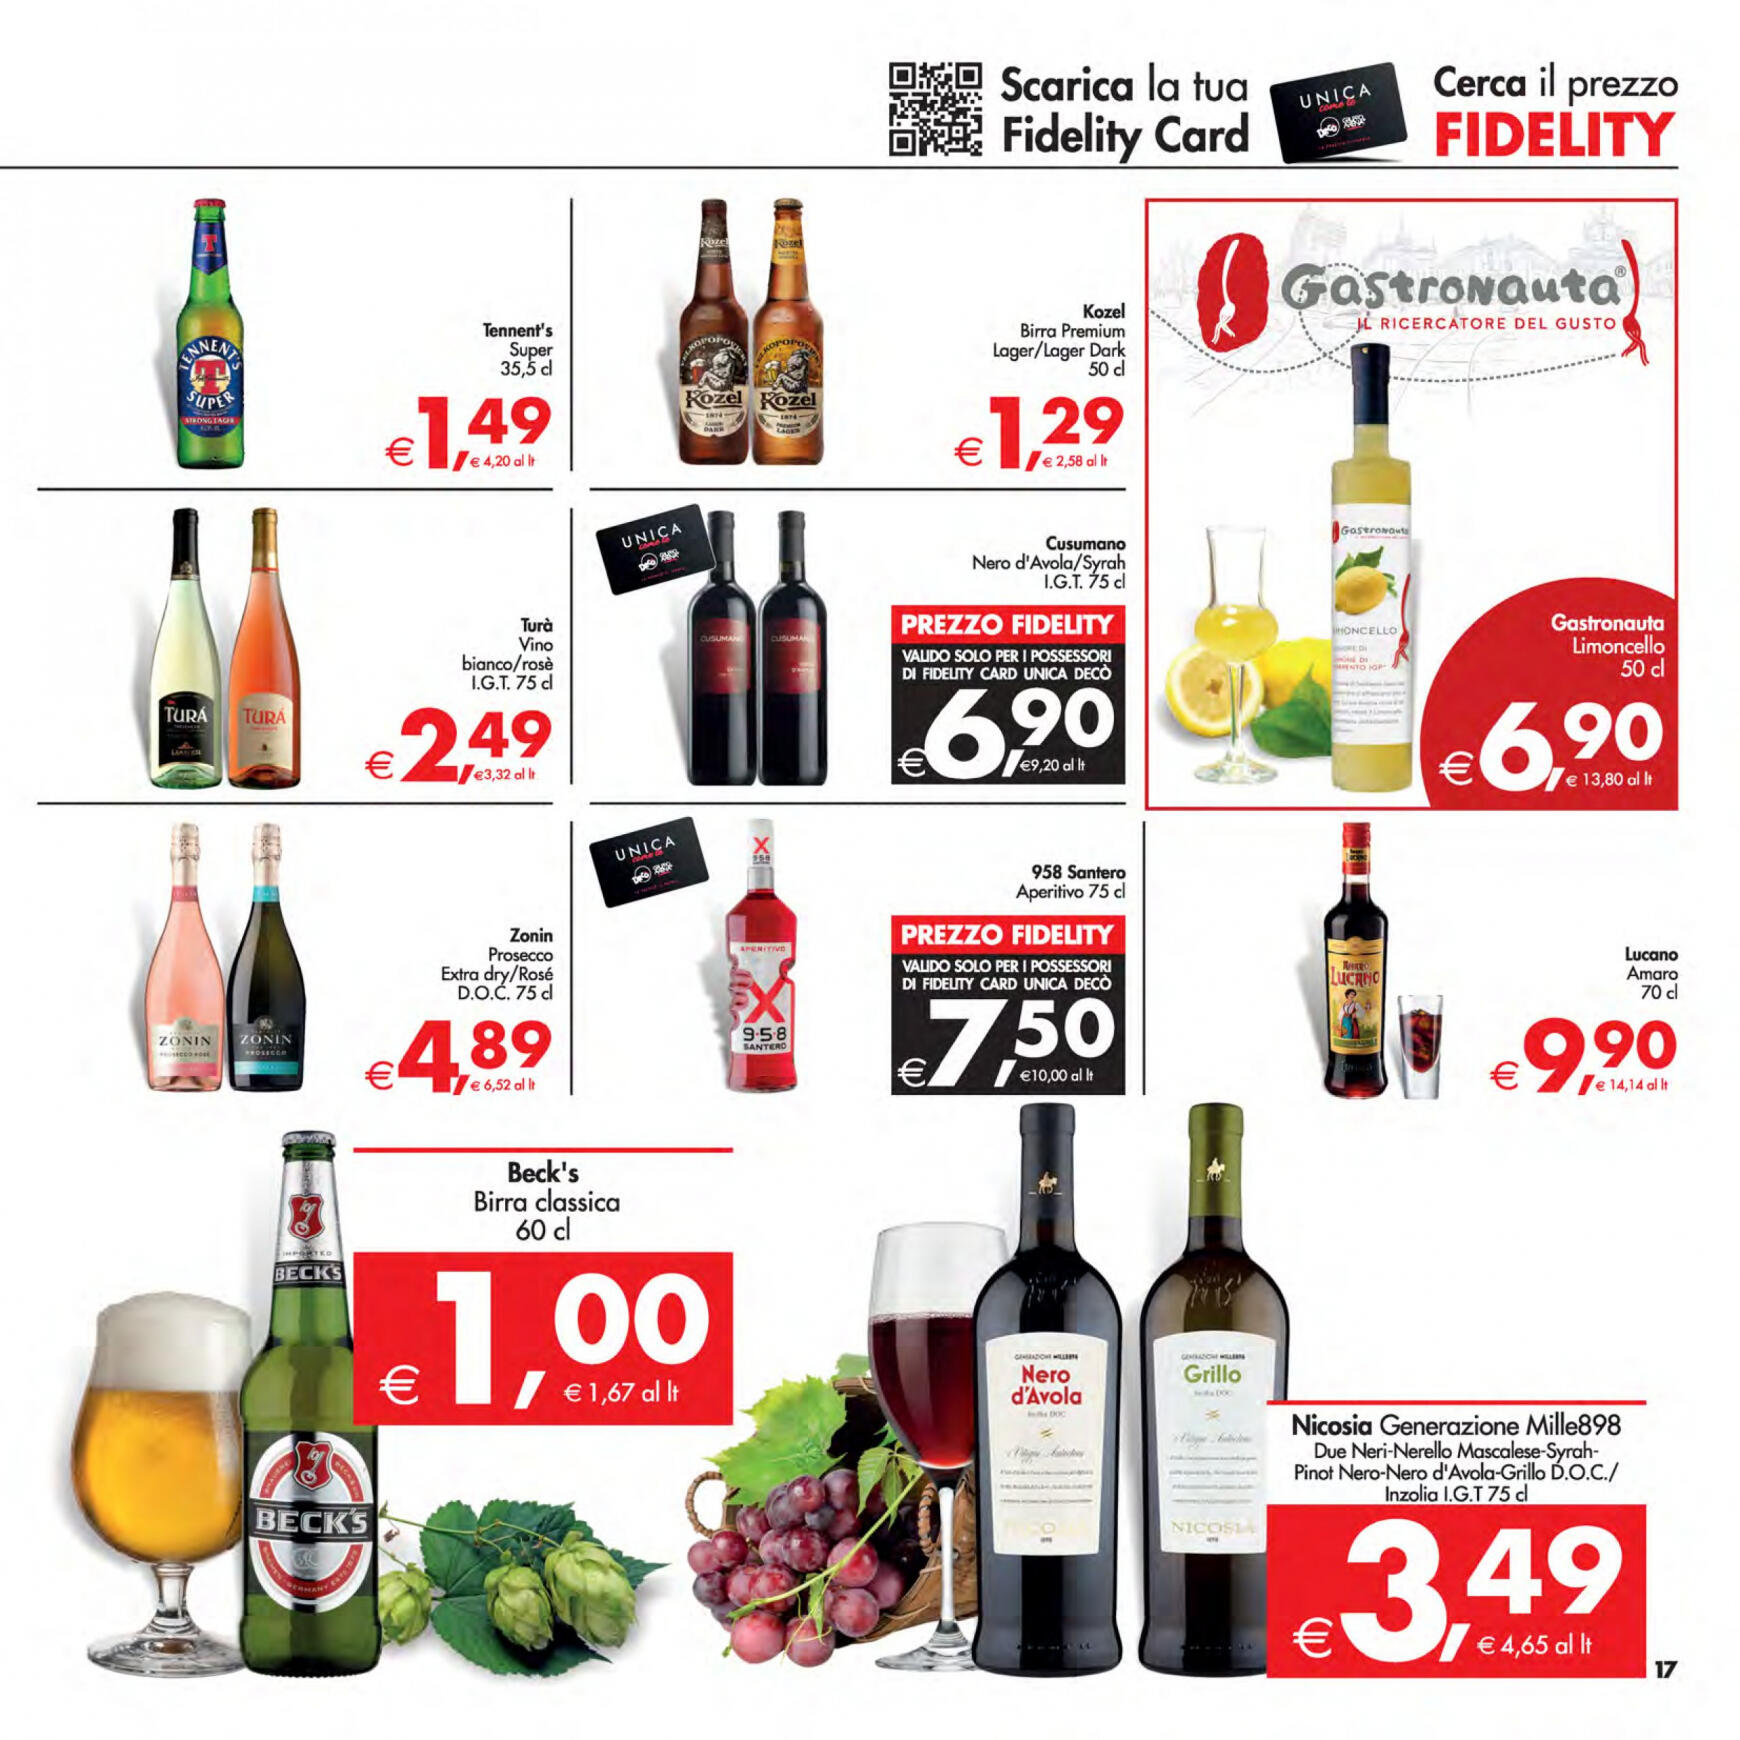 deco - Nuovo volantino Decò - Supermercati/Maxistore/Local 23.04. - 02.05. - page: 17